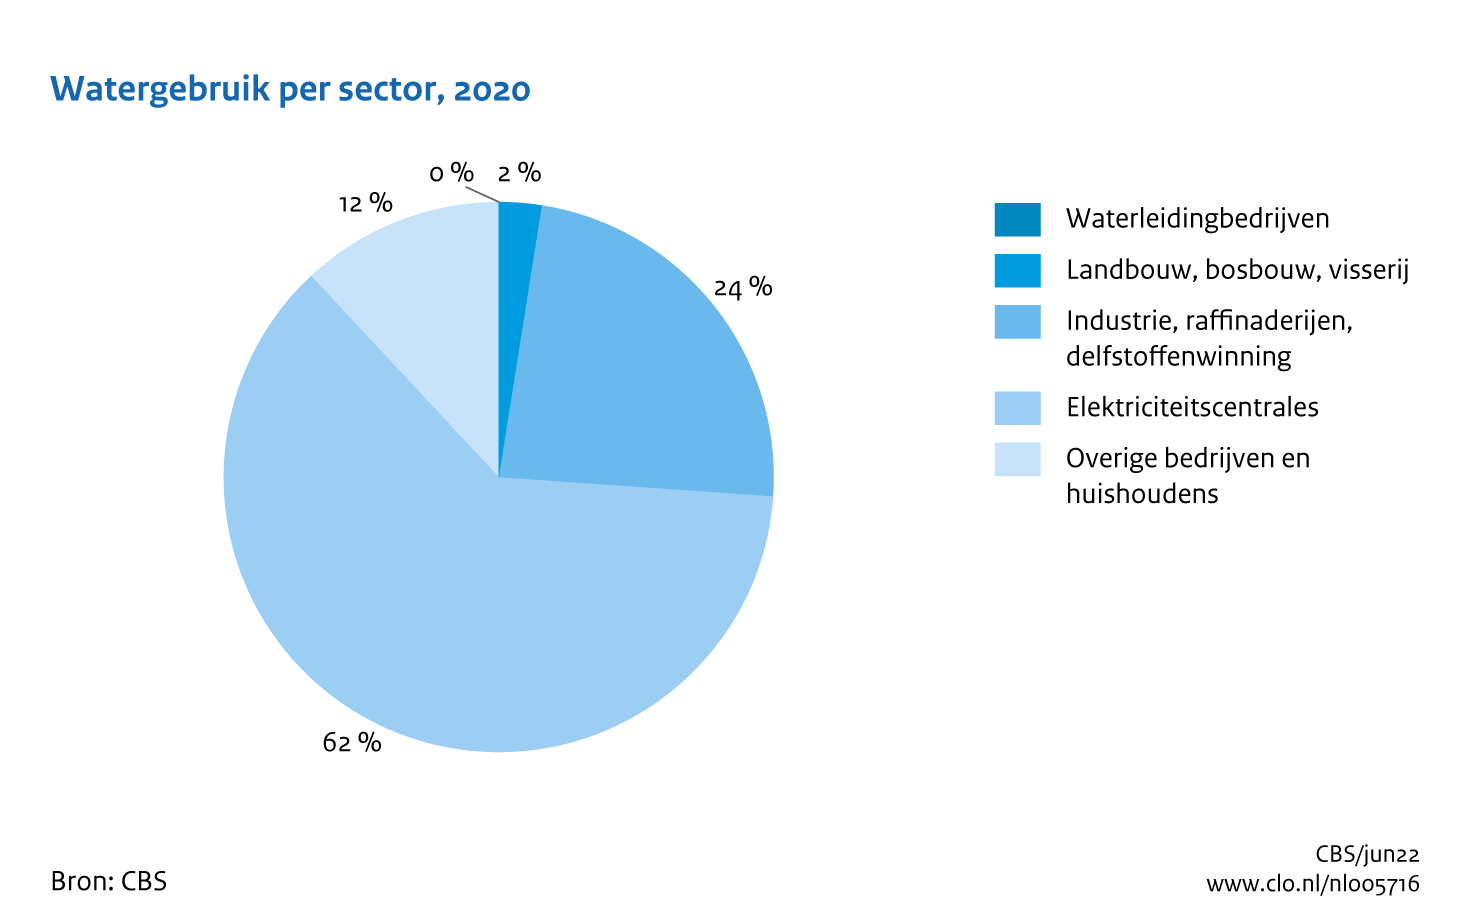 Figuur Watergebruik sectoren 2020. In de rest van de tekst wordt deze figuur uitgebreider uitgelegd.